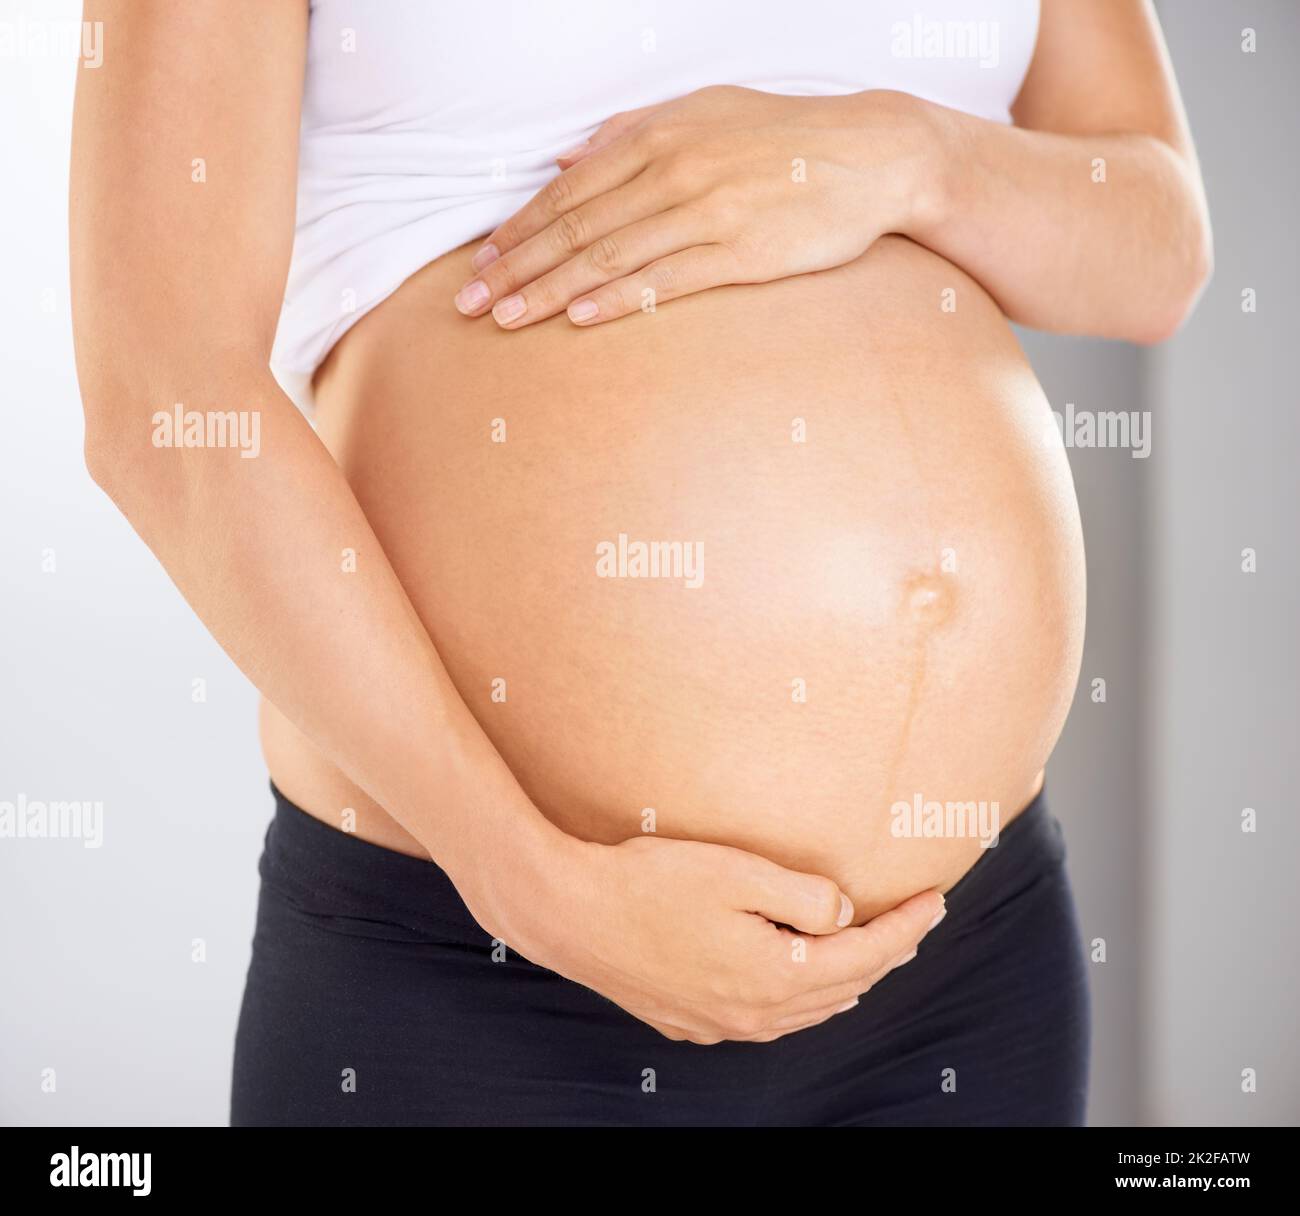 Je t'aime déjà. Image rognée d'une femme enceinte tenant son estomac affectueusement. Banque D'Images